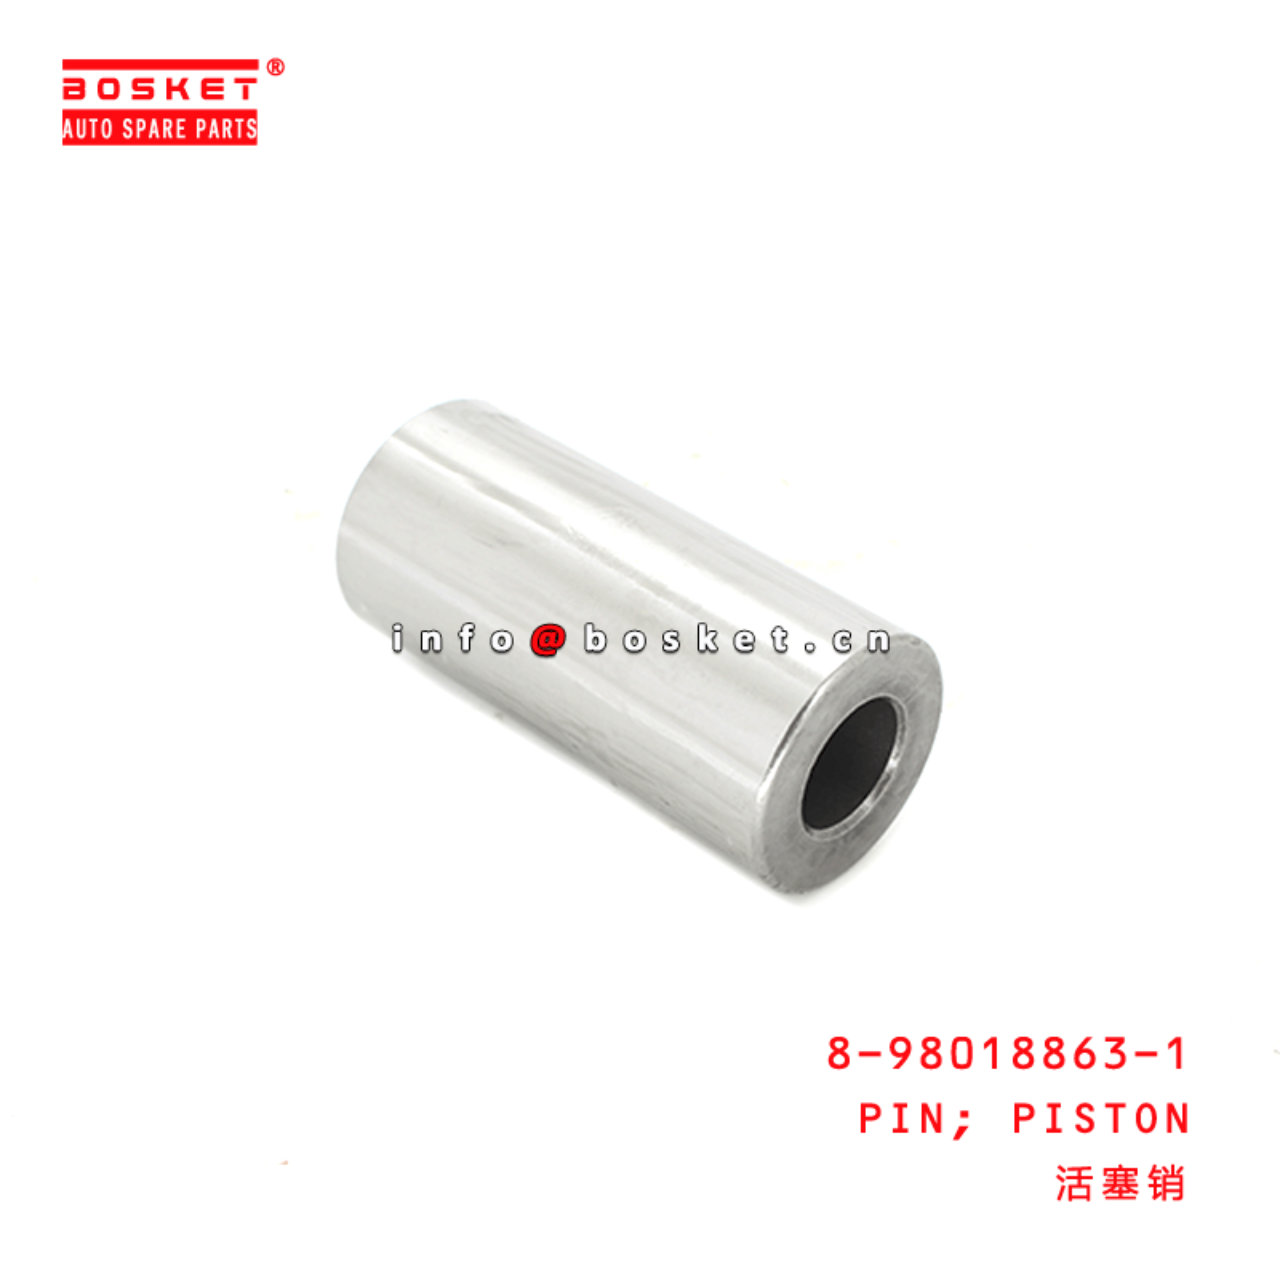 8-98018863-1 Piston Pin Suitable for ISUZU FRR FSR FTR 4HK1 6HK1 8980188631